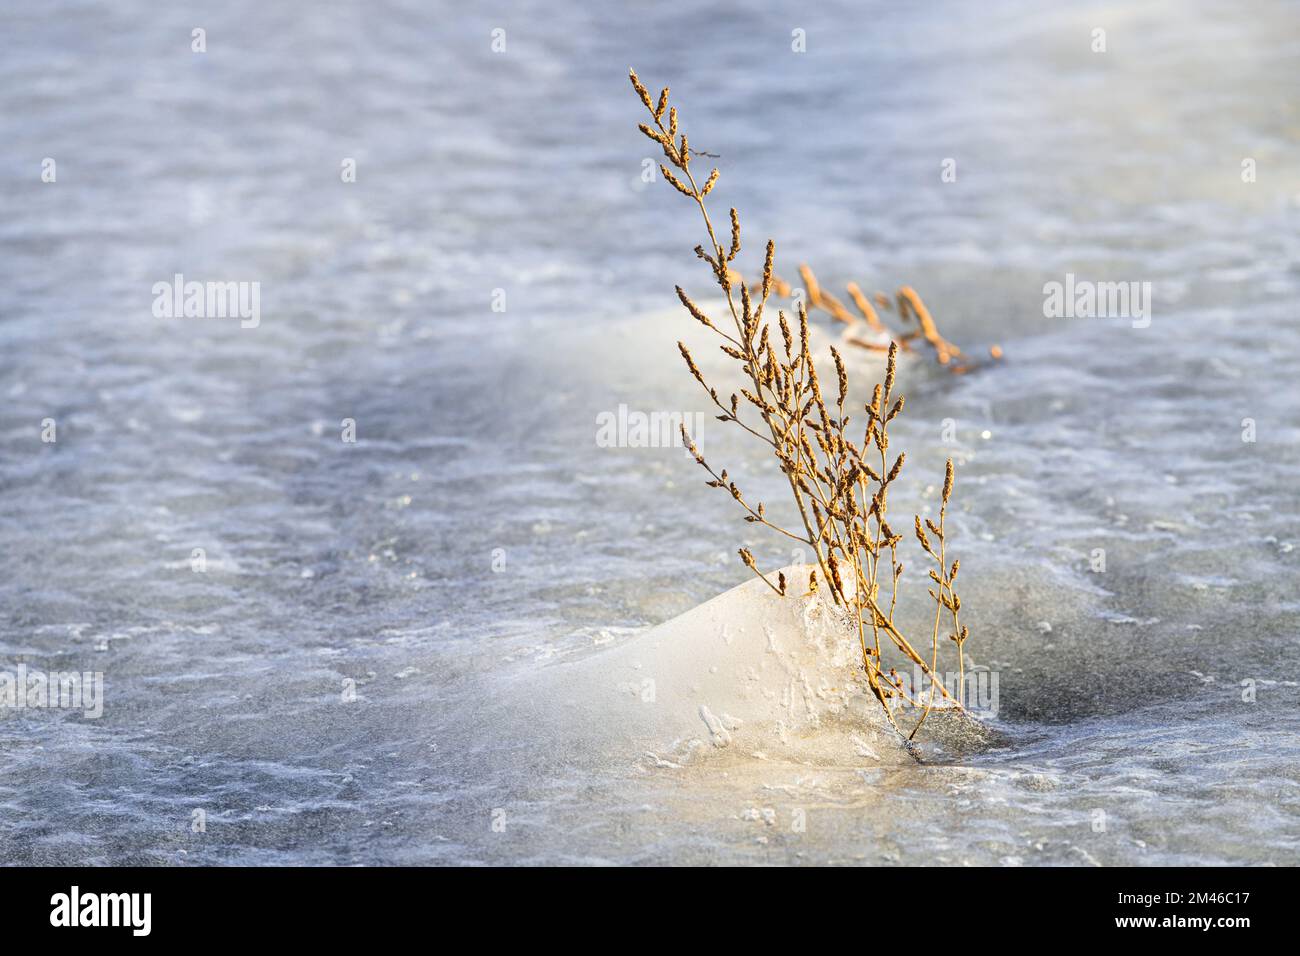 Une panicule d'herbe monte au-dessus de la surface de la glace d'un lac gelé et est éclairée par la lumière dorée du soleil couchant sur une longue durée en fin d'après-midi Banque D'Images